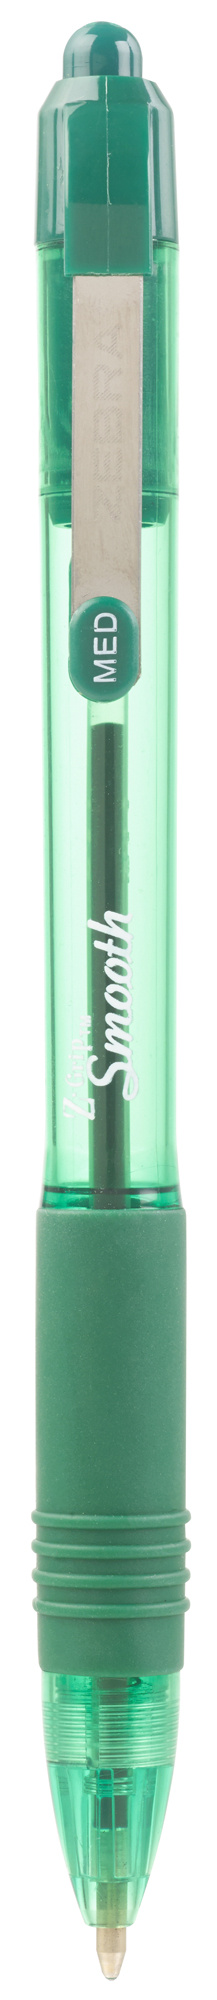 Ручка шариков. автоматическая Zebra Z-grip Smooth (22564) зеленый d=1мм зел. черн. резин. манжета